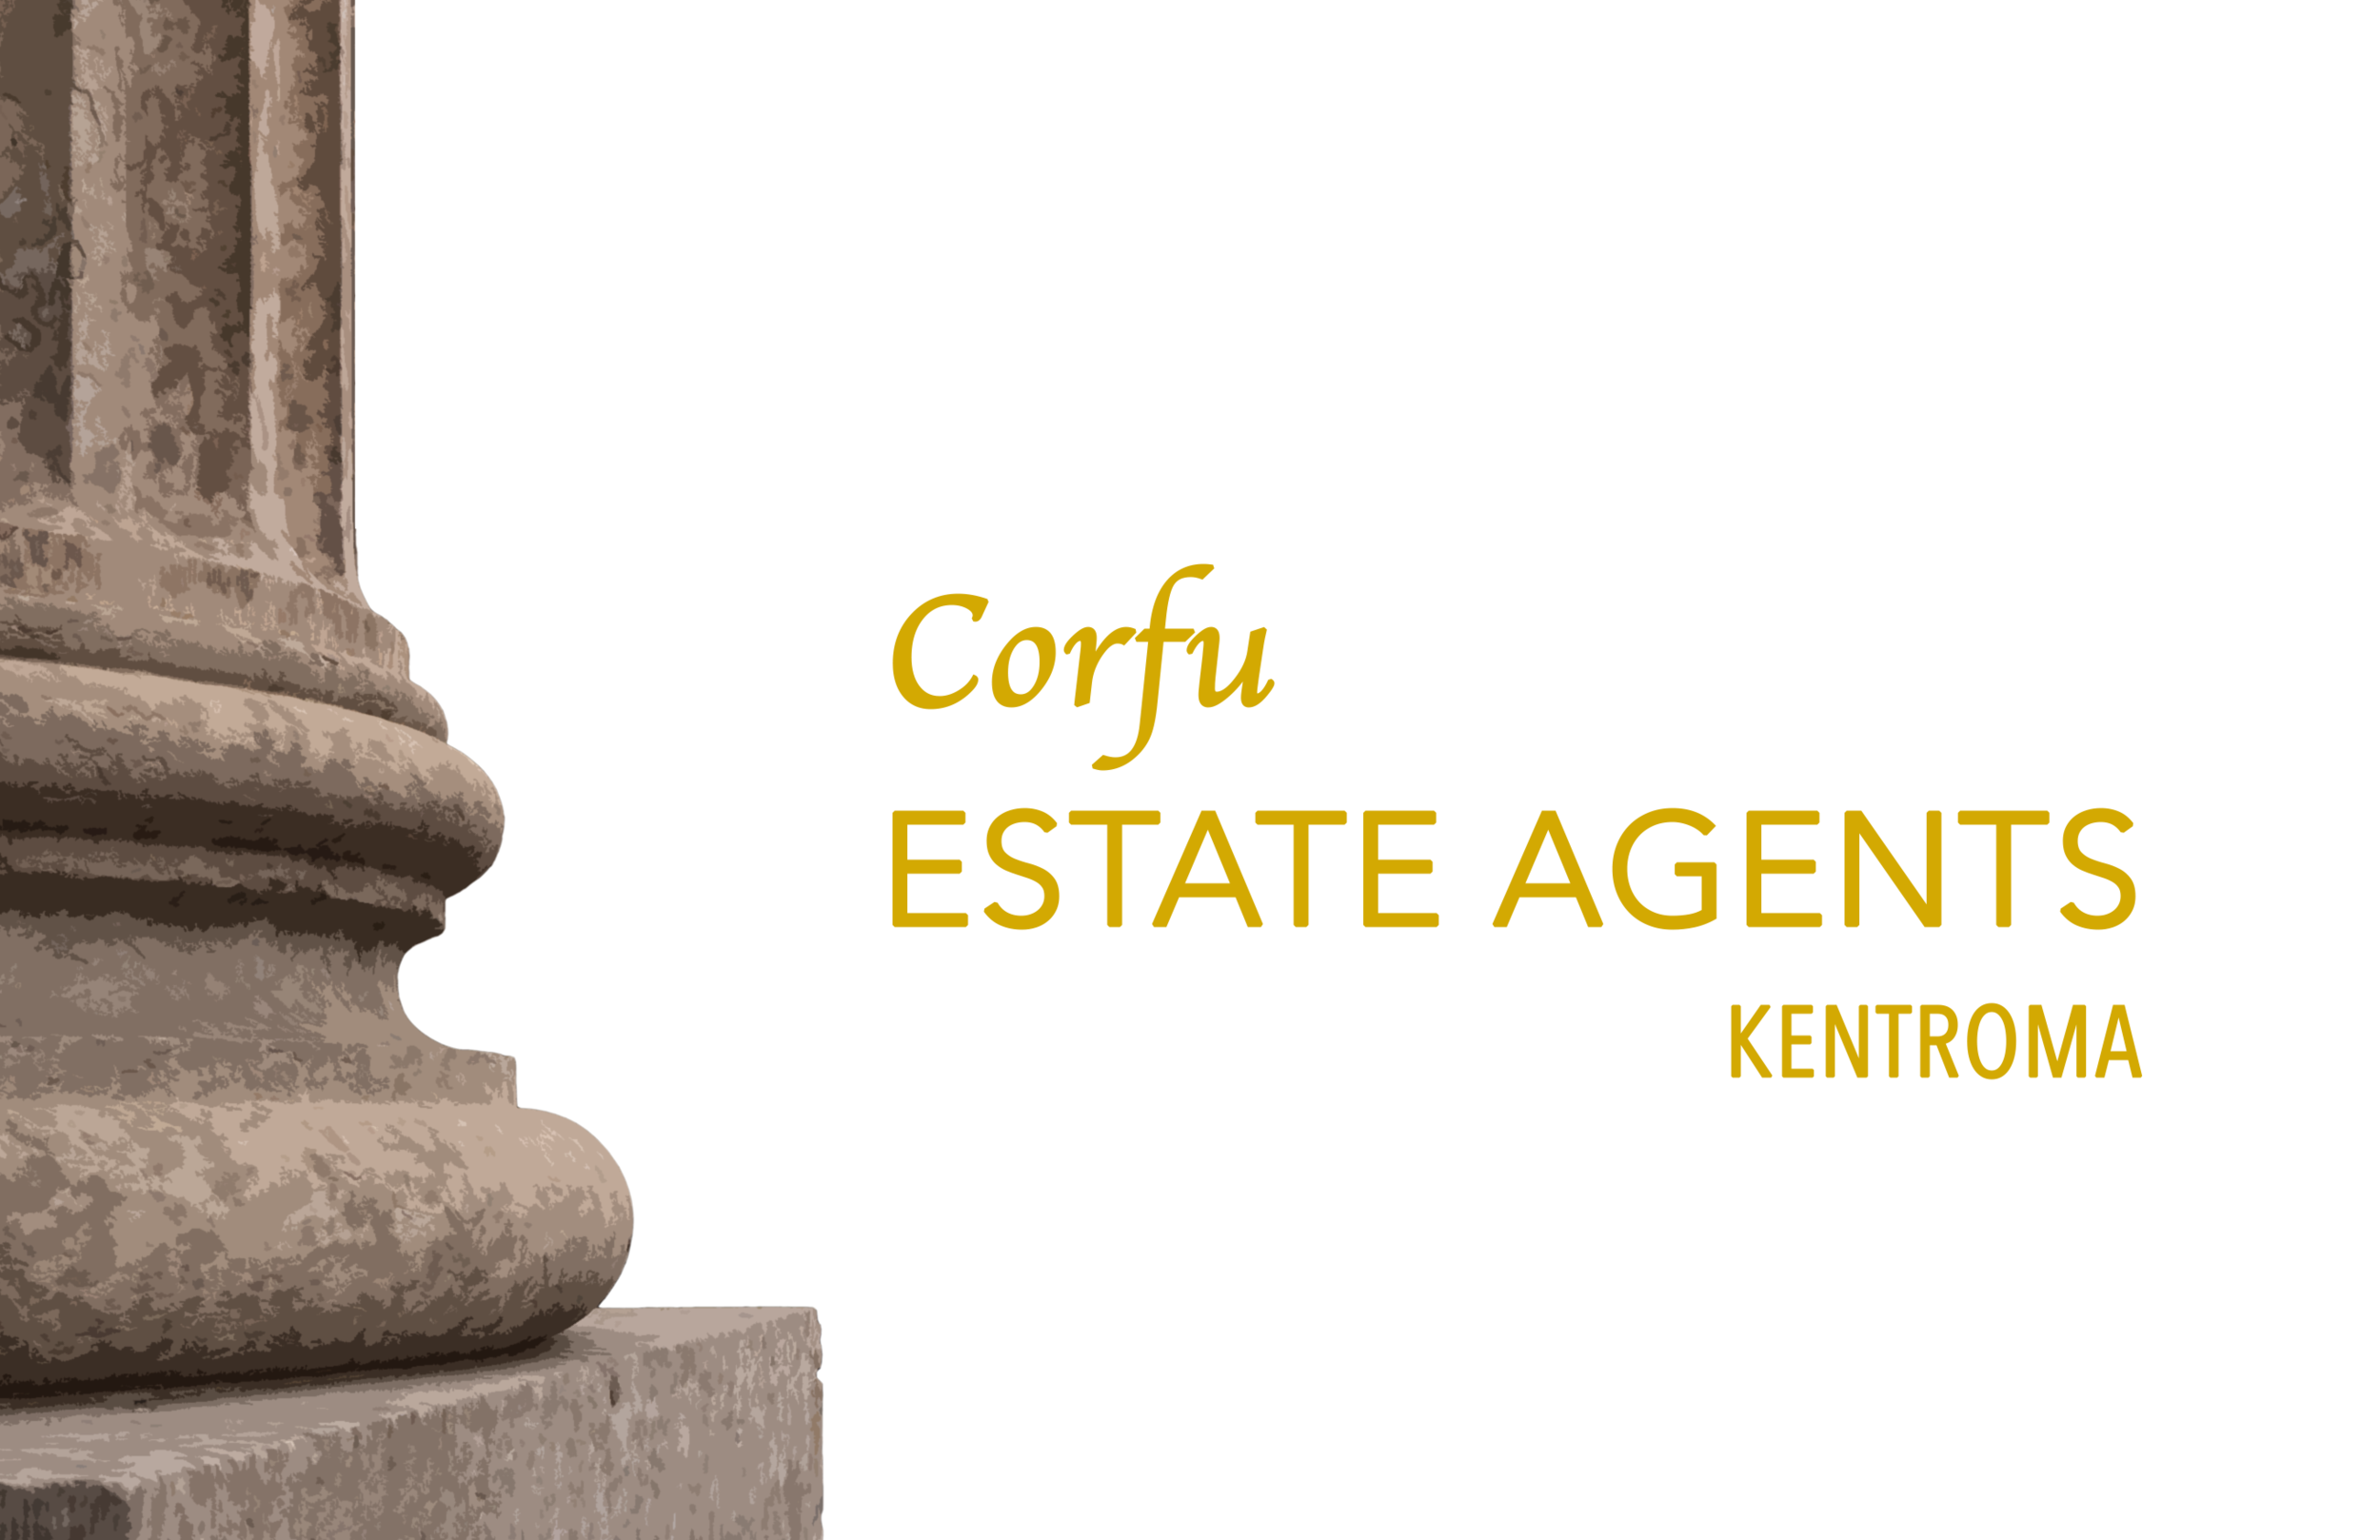 Corfu Estate Agents